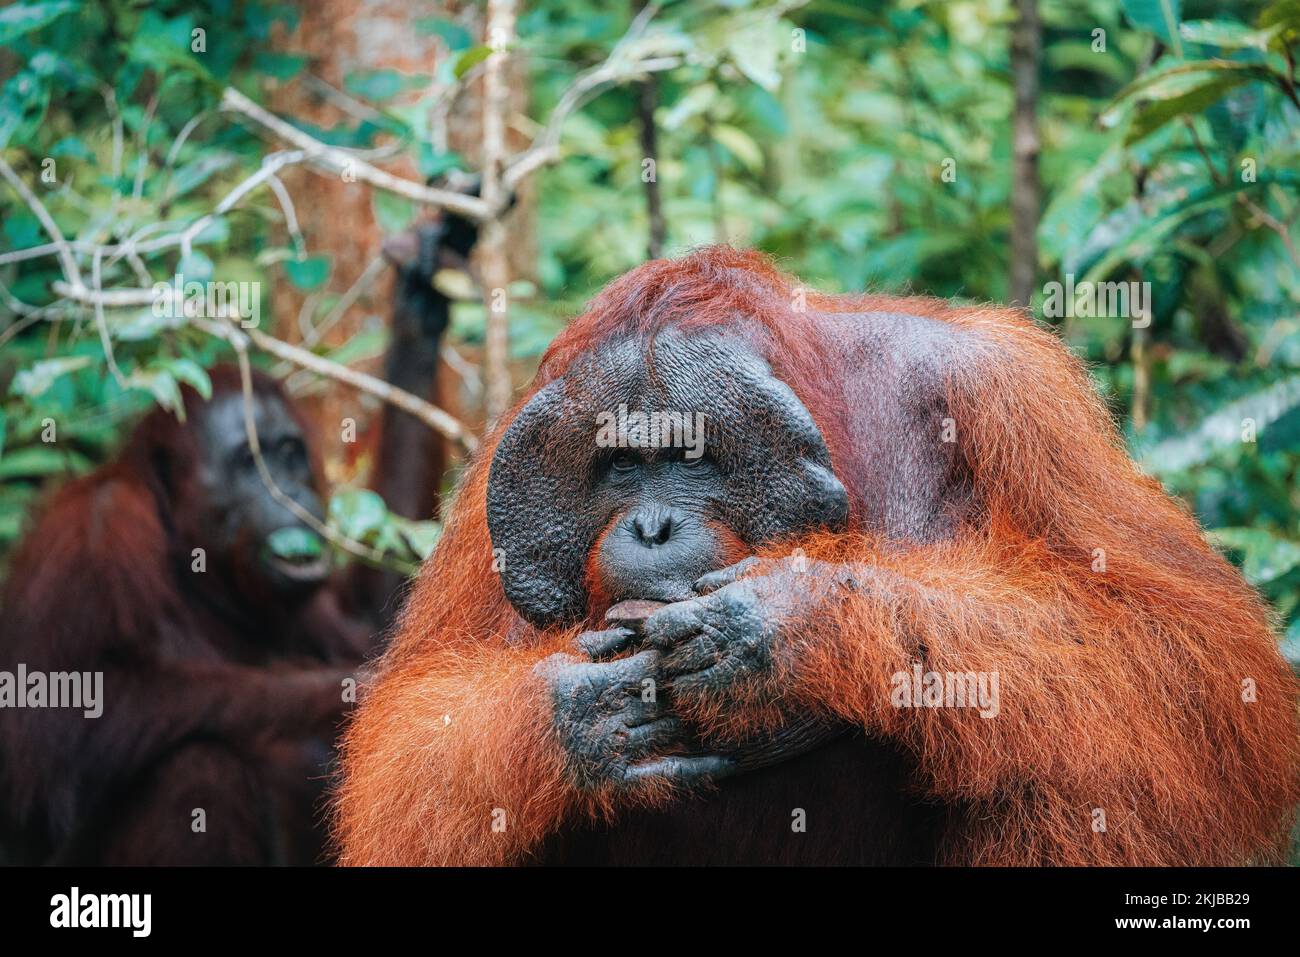 Portrait of Bornean Orangutan or Pongo pygmaeus Stock Photo